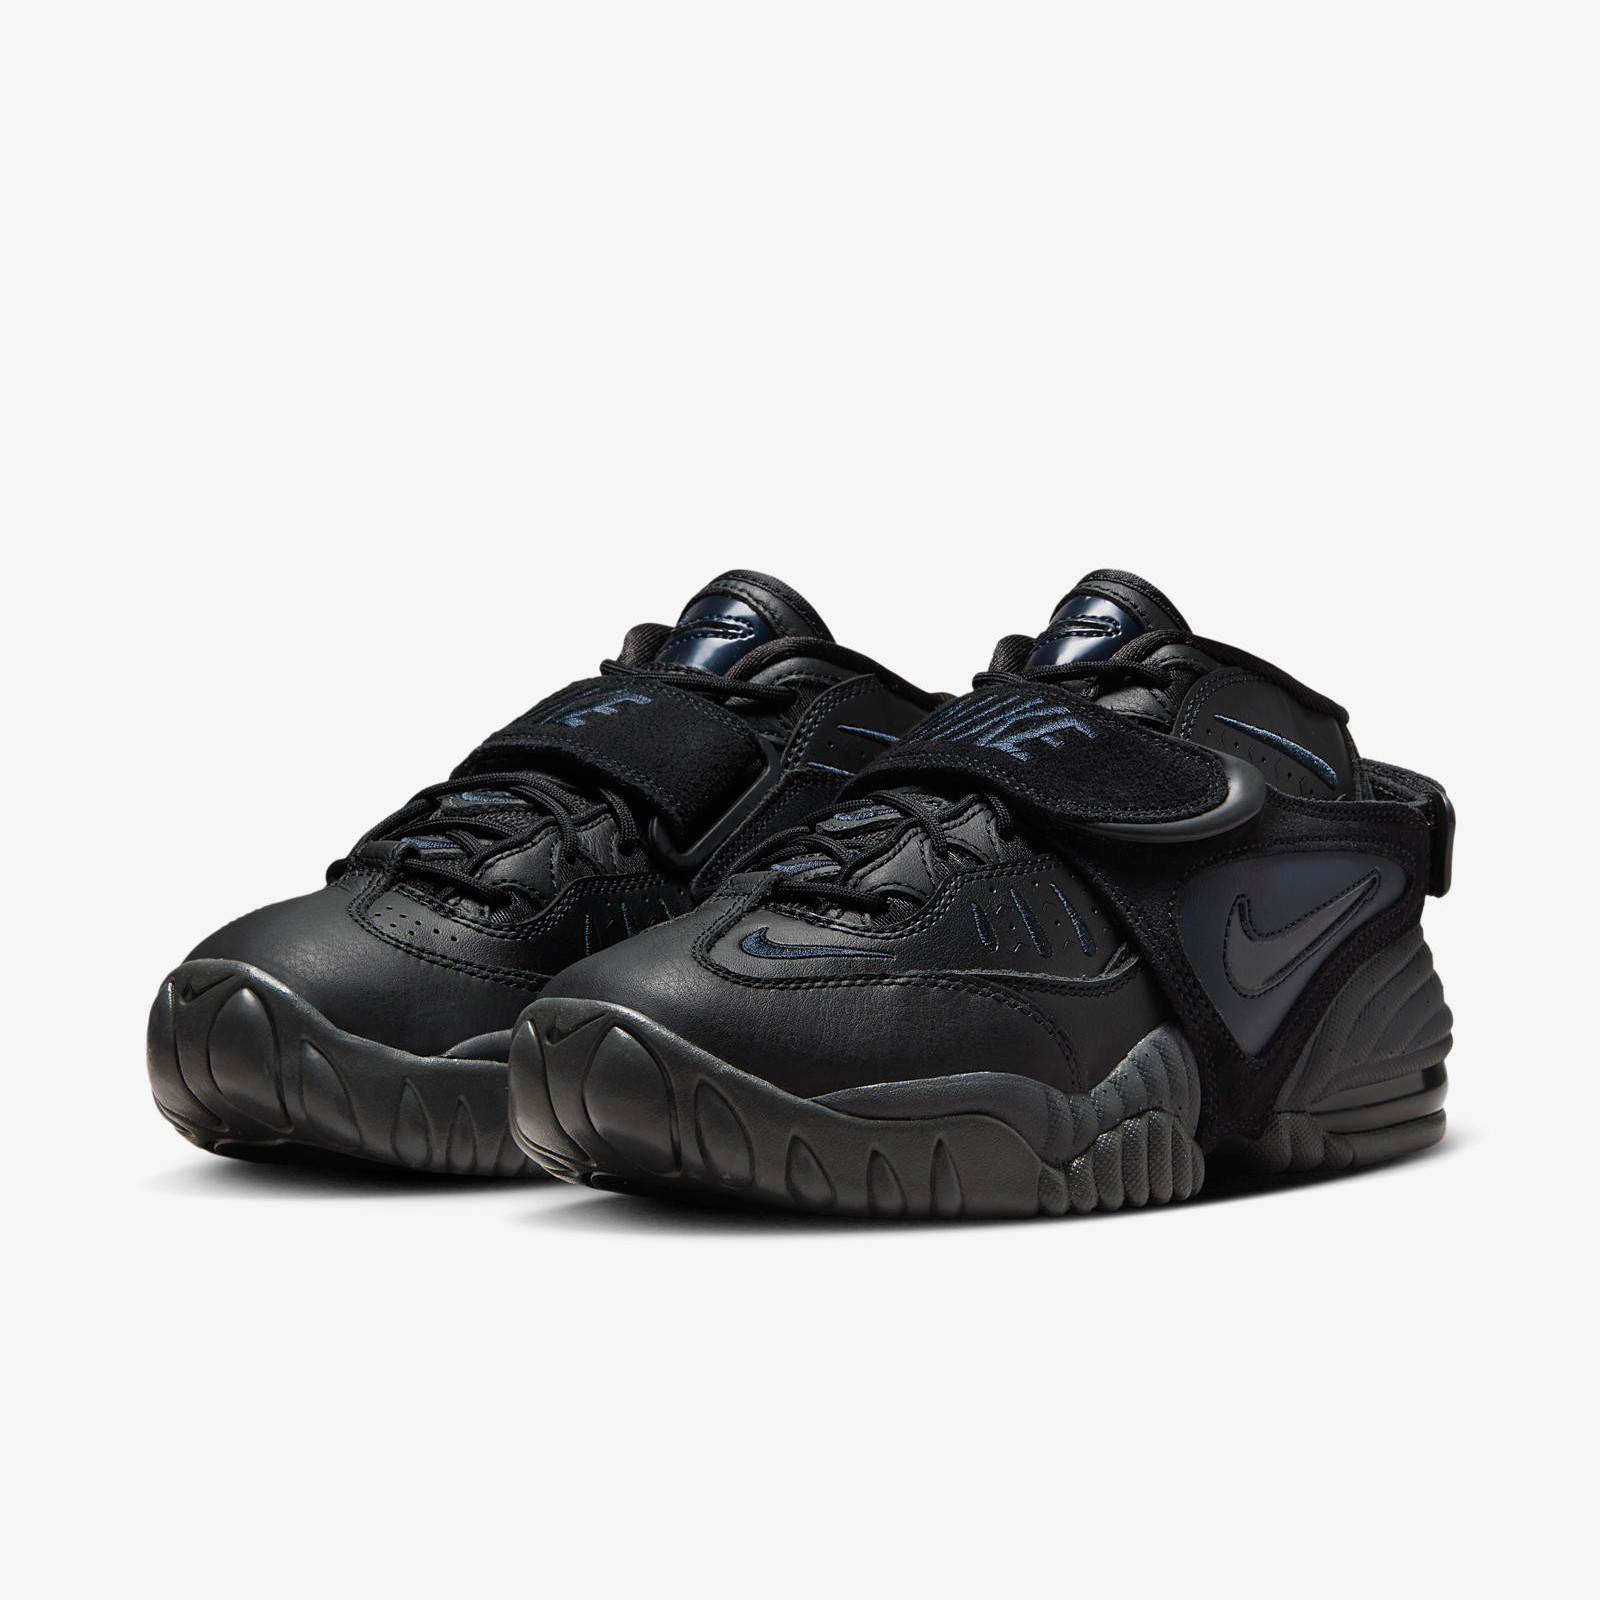 Nike Air Adjust Force
« Dark Obsidian »